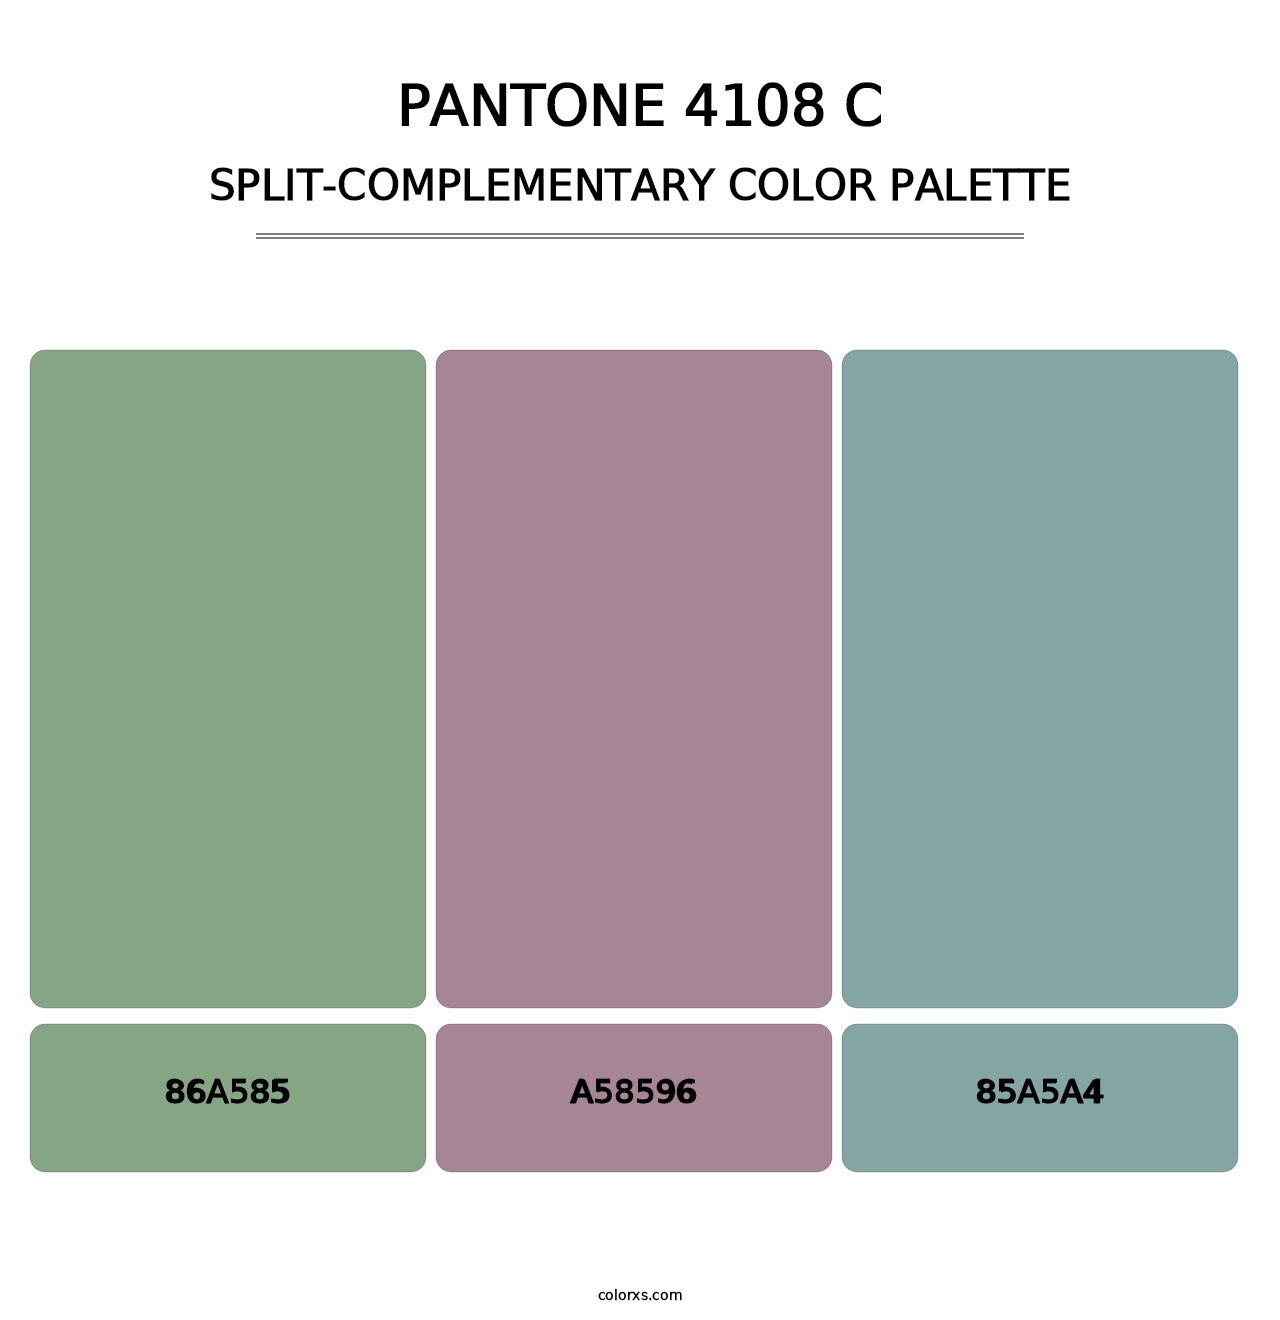 PANTONE 4108 C - Split-Complementary Color Palette